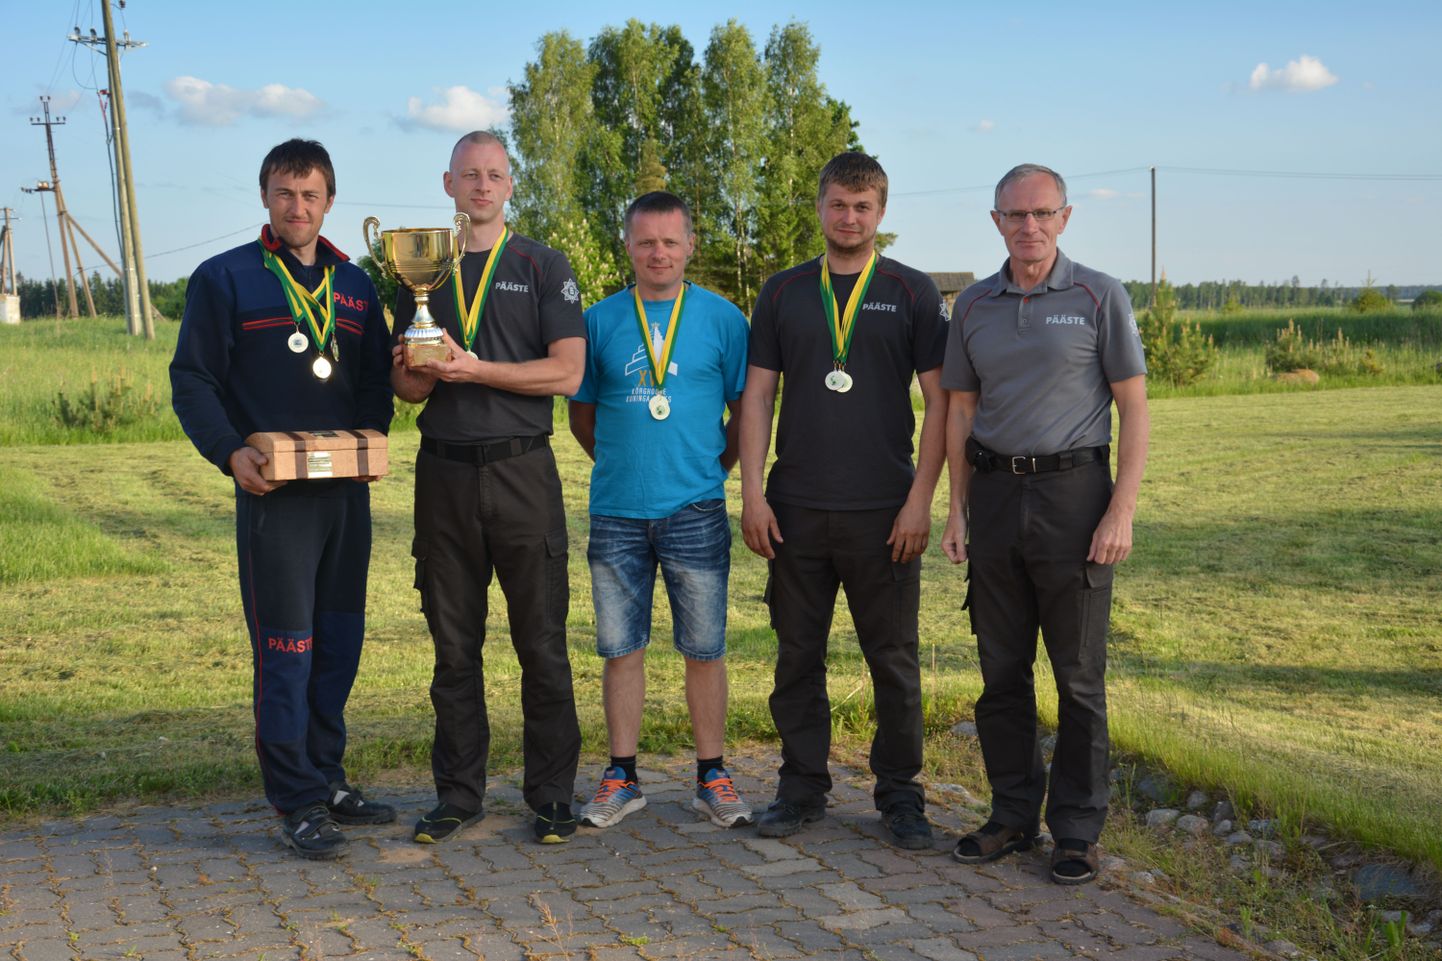 Viljandimaa võidukasse võistkonda kuulusid Viljar Kütt, Kevo Kärp, Tõnu Mardla ja Tõnis Unt. Võistkonna esindaja oli Jüri Soovik.